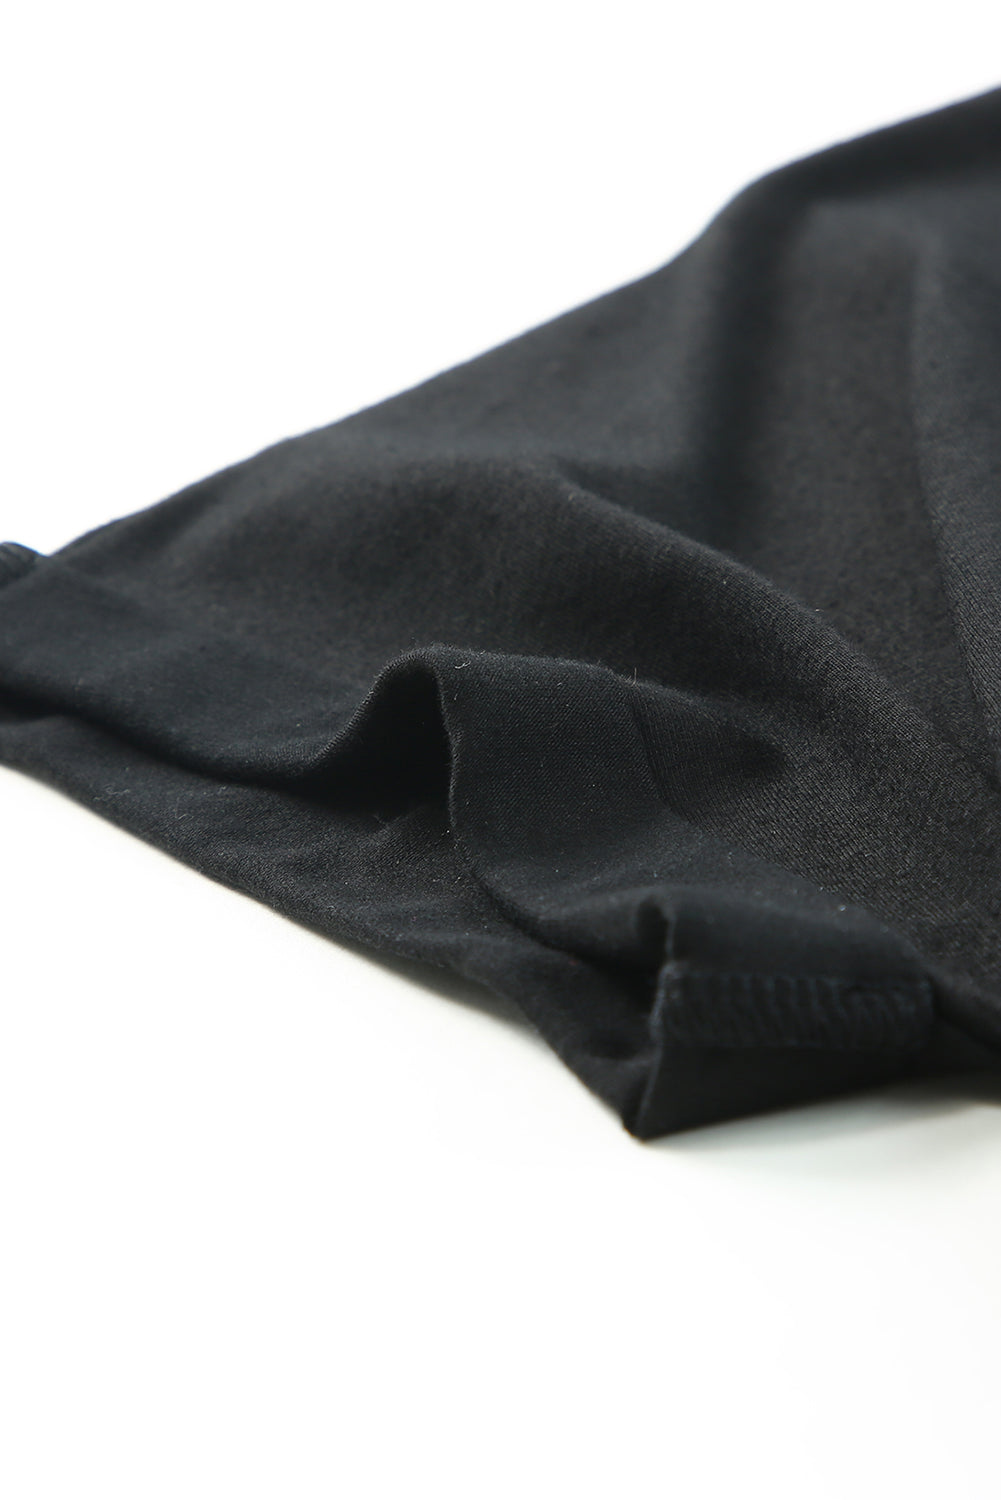 Crna široka majica kratkih rukava s džepovima na prsima, mini haljina s naborima